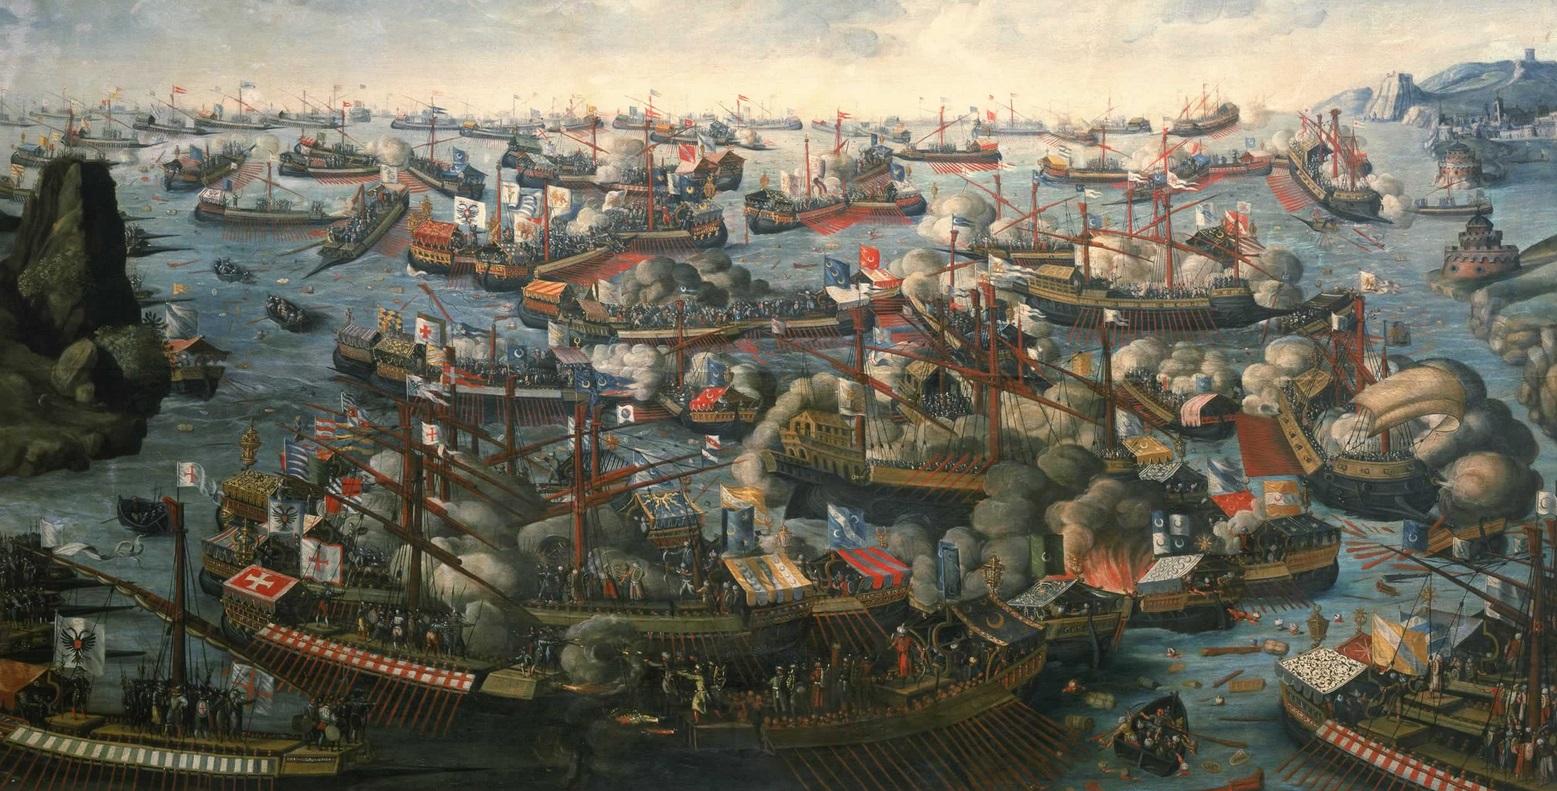 Pintura que representa la batalla de lepanto. Autor desconocido (Después de 1571)